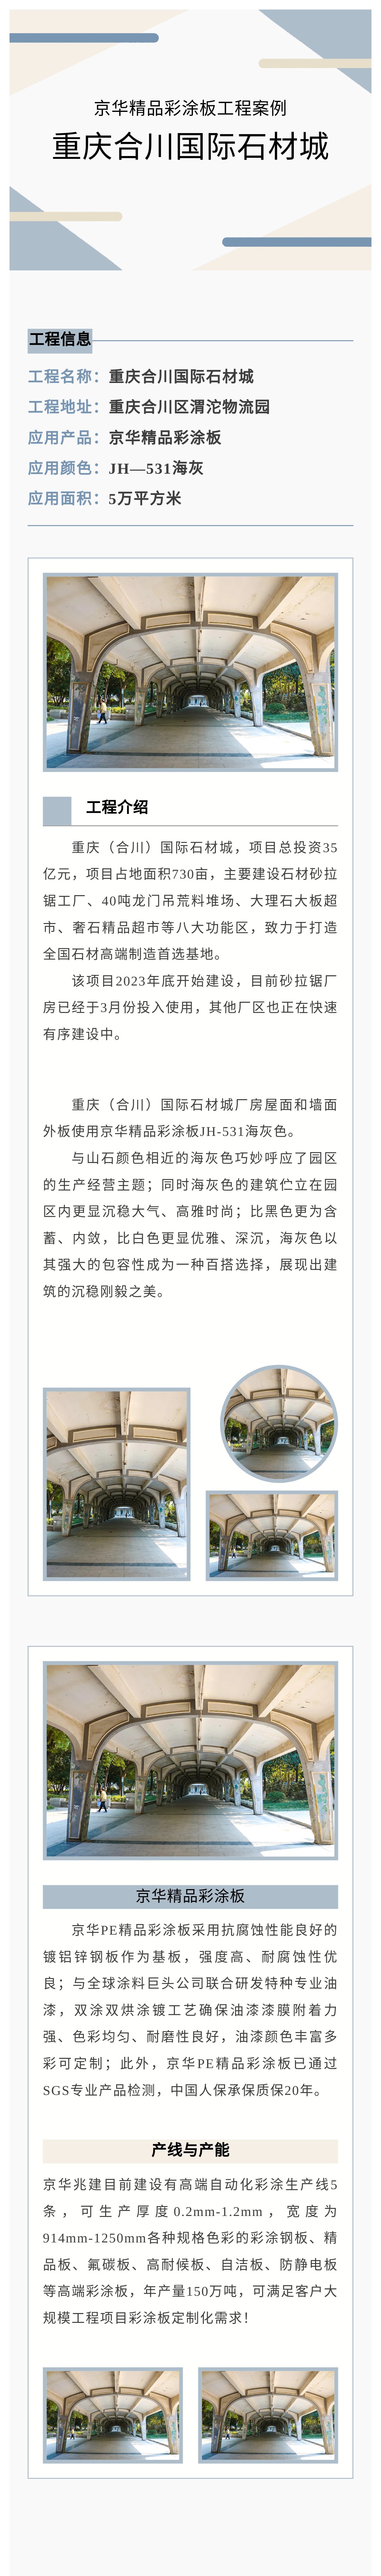 京华精品彩涂板工程案例丨重庆合川国际石材城墙屋面工程